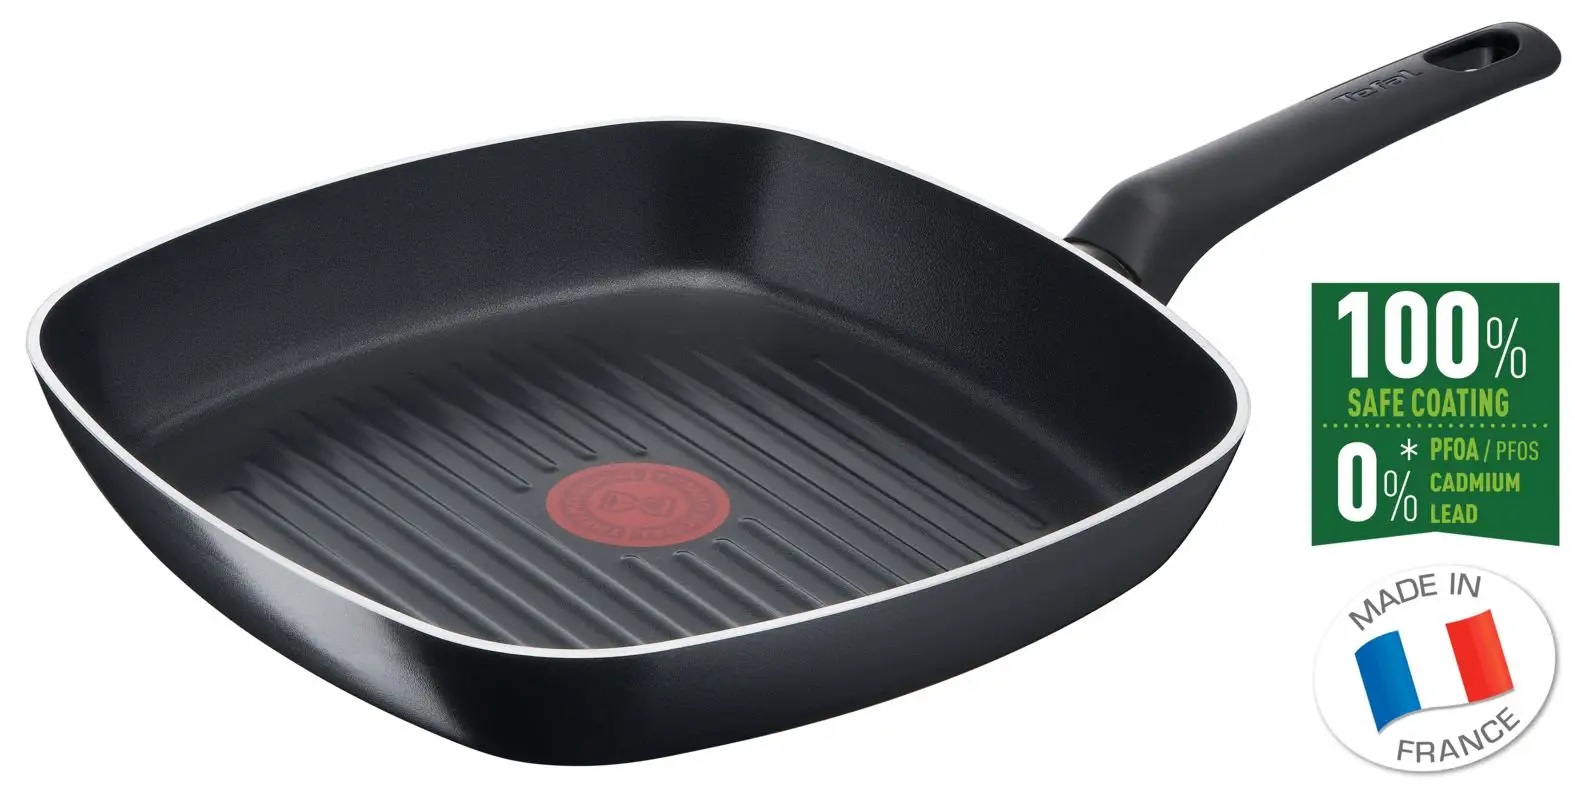 Tefal B5564053 Simple Cook 26 x 26cm Grill serpenyő – Fekete